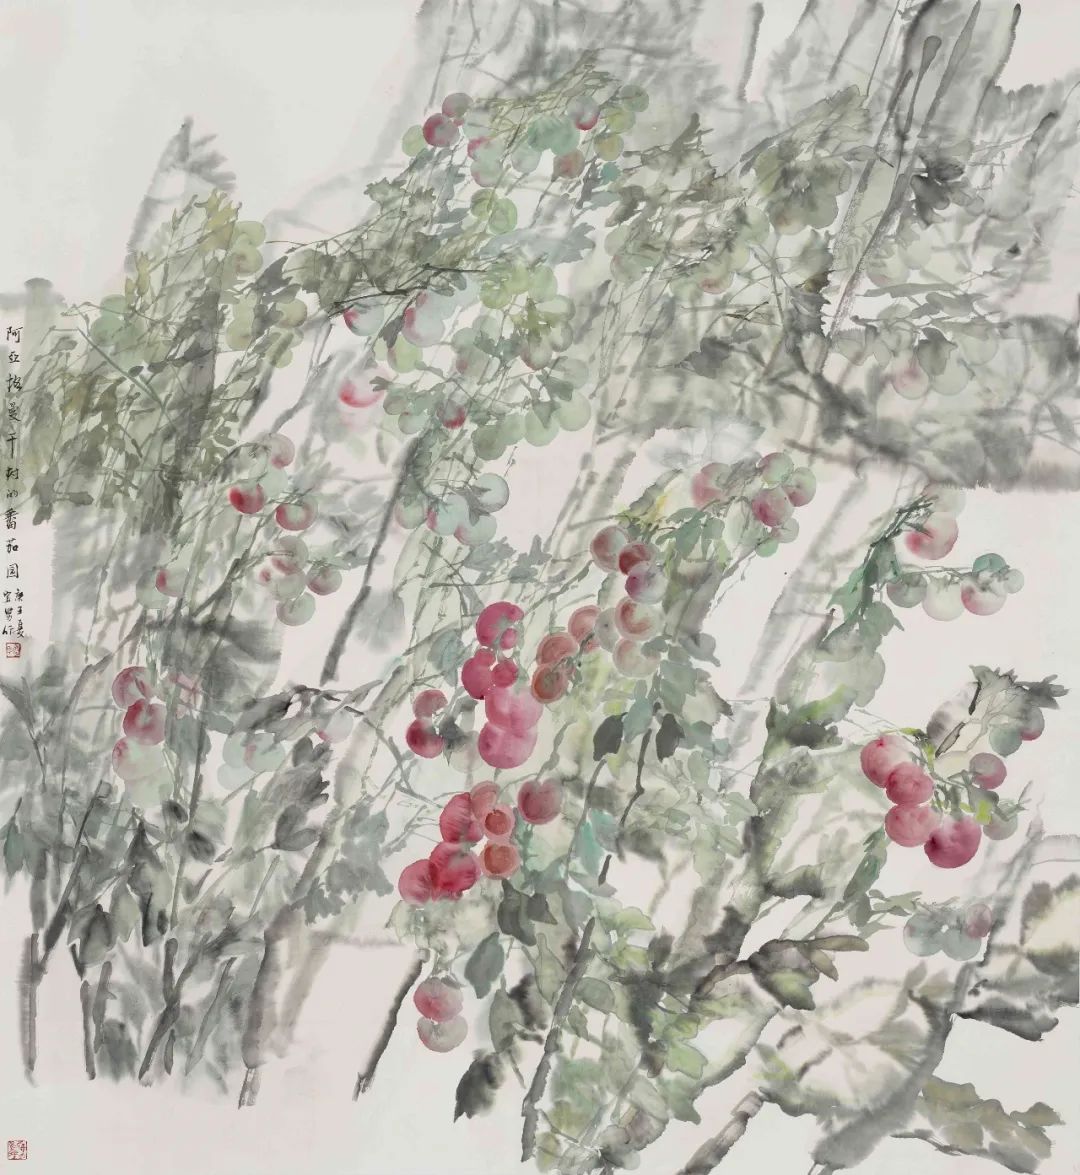 表现田园之美，表达生活之甜——著名画家乔宜男南疆写生创作感言